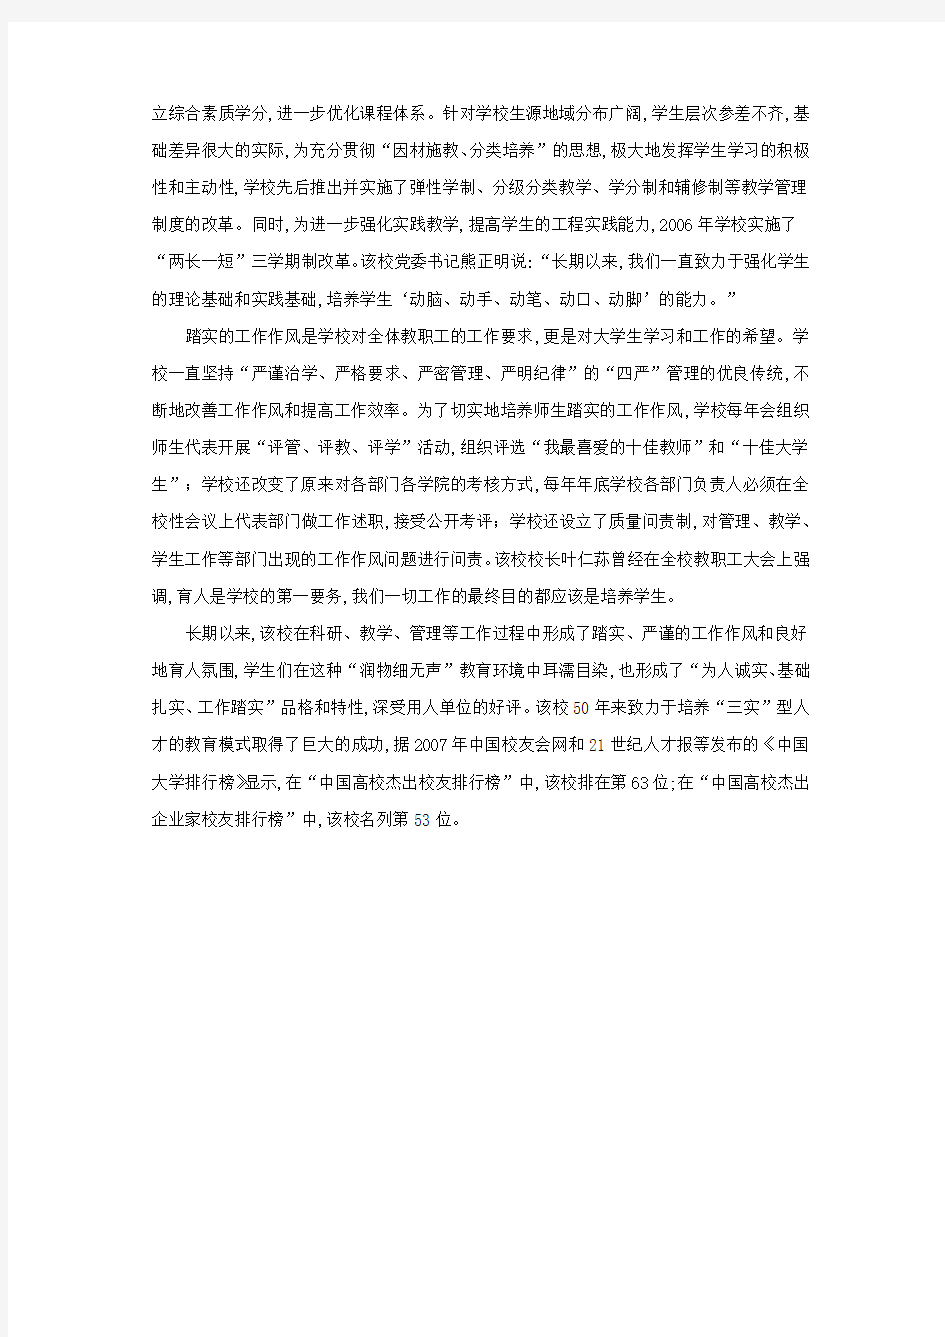 《中国有色金属报》以《江西理工大学培养“三实”人才》为题报道我校人才培养工作